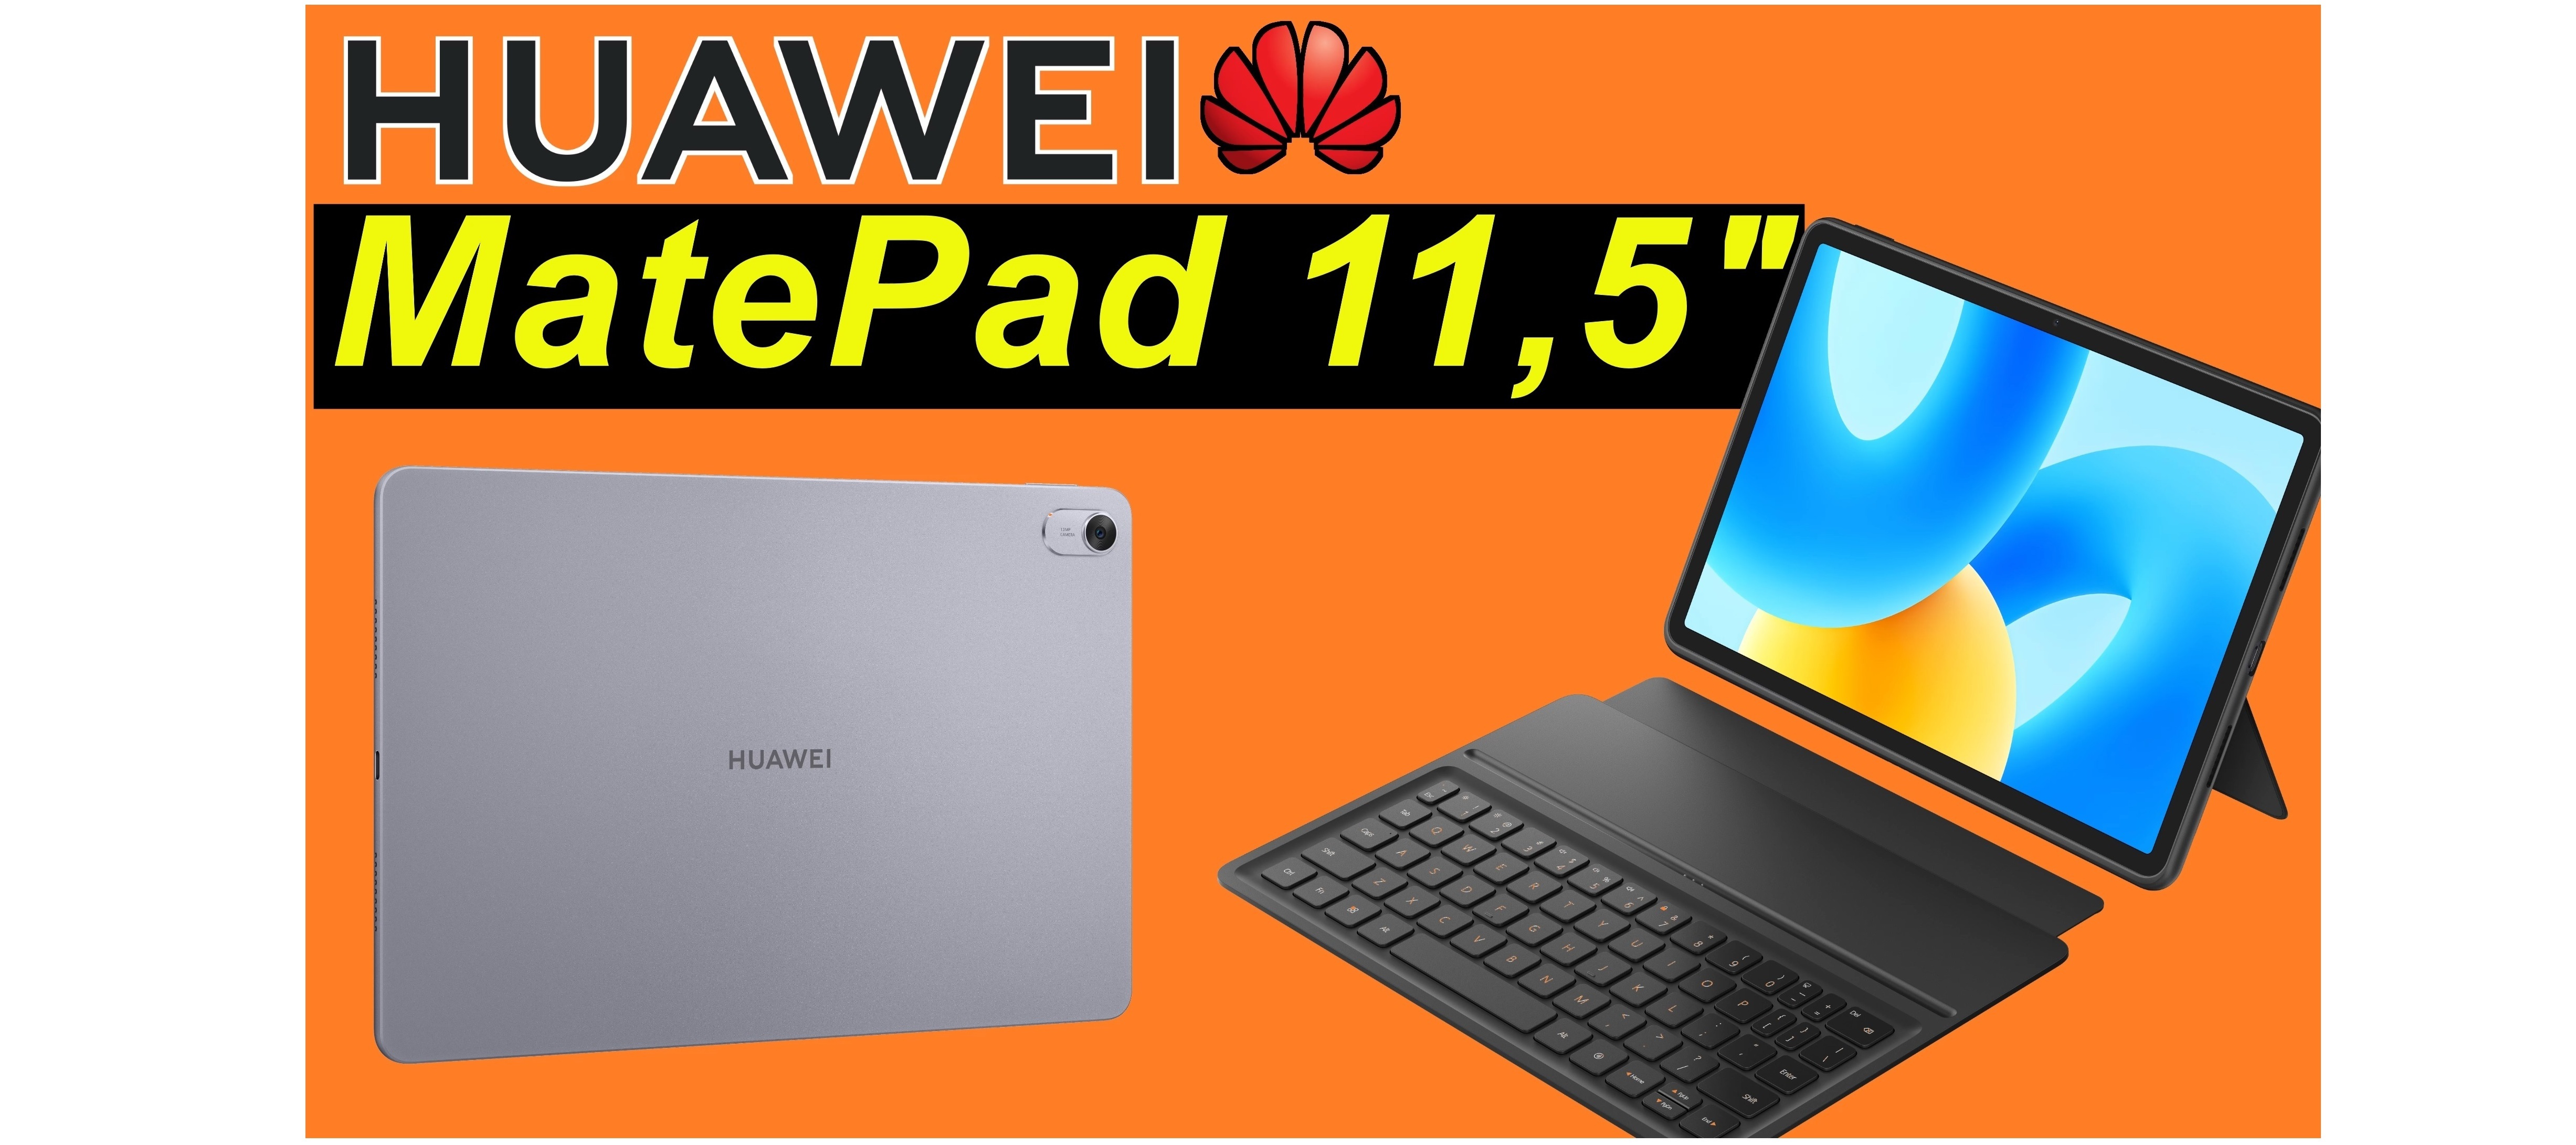 Huawei MatePad 11,5" - Unboxing und Ersteindruck